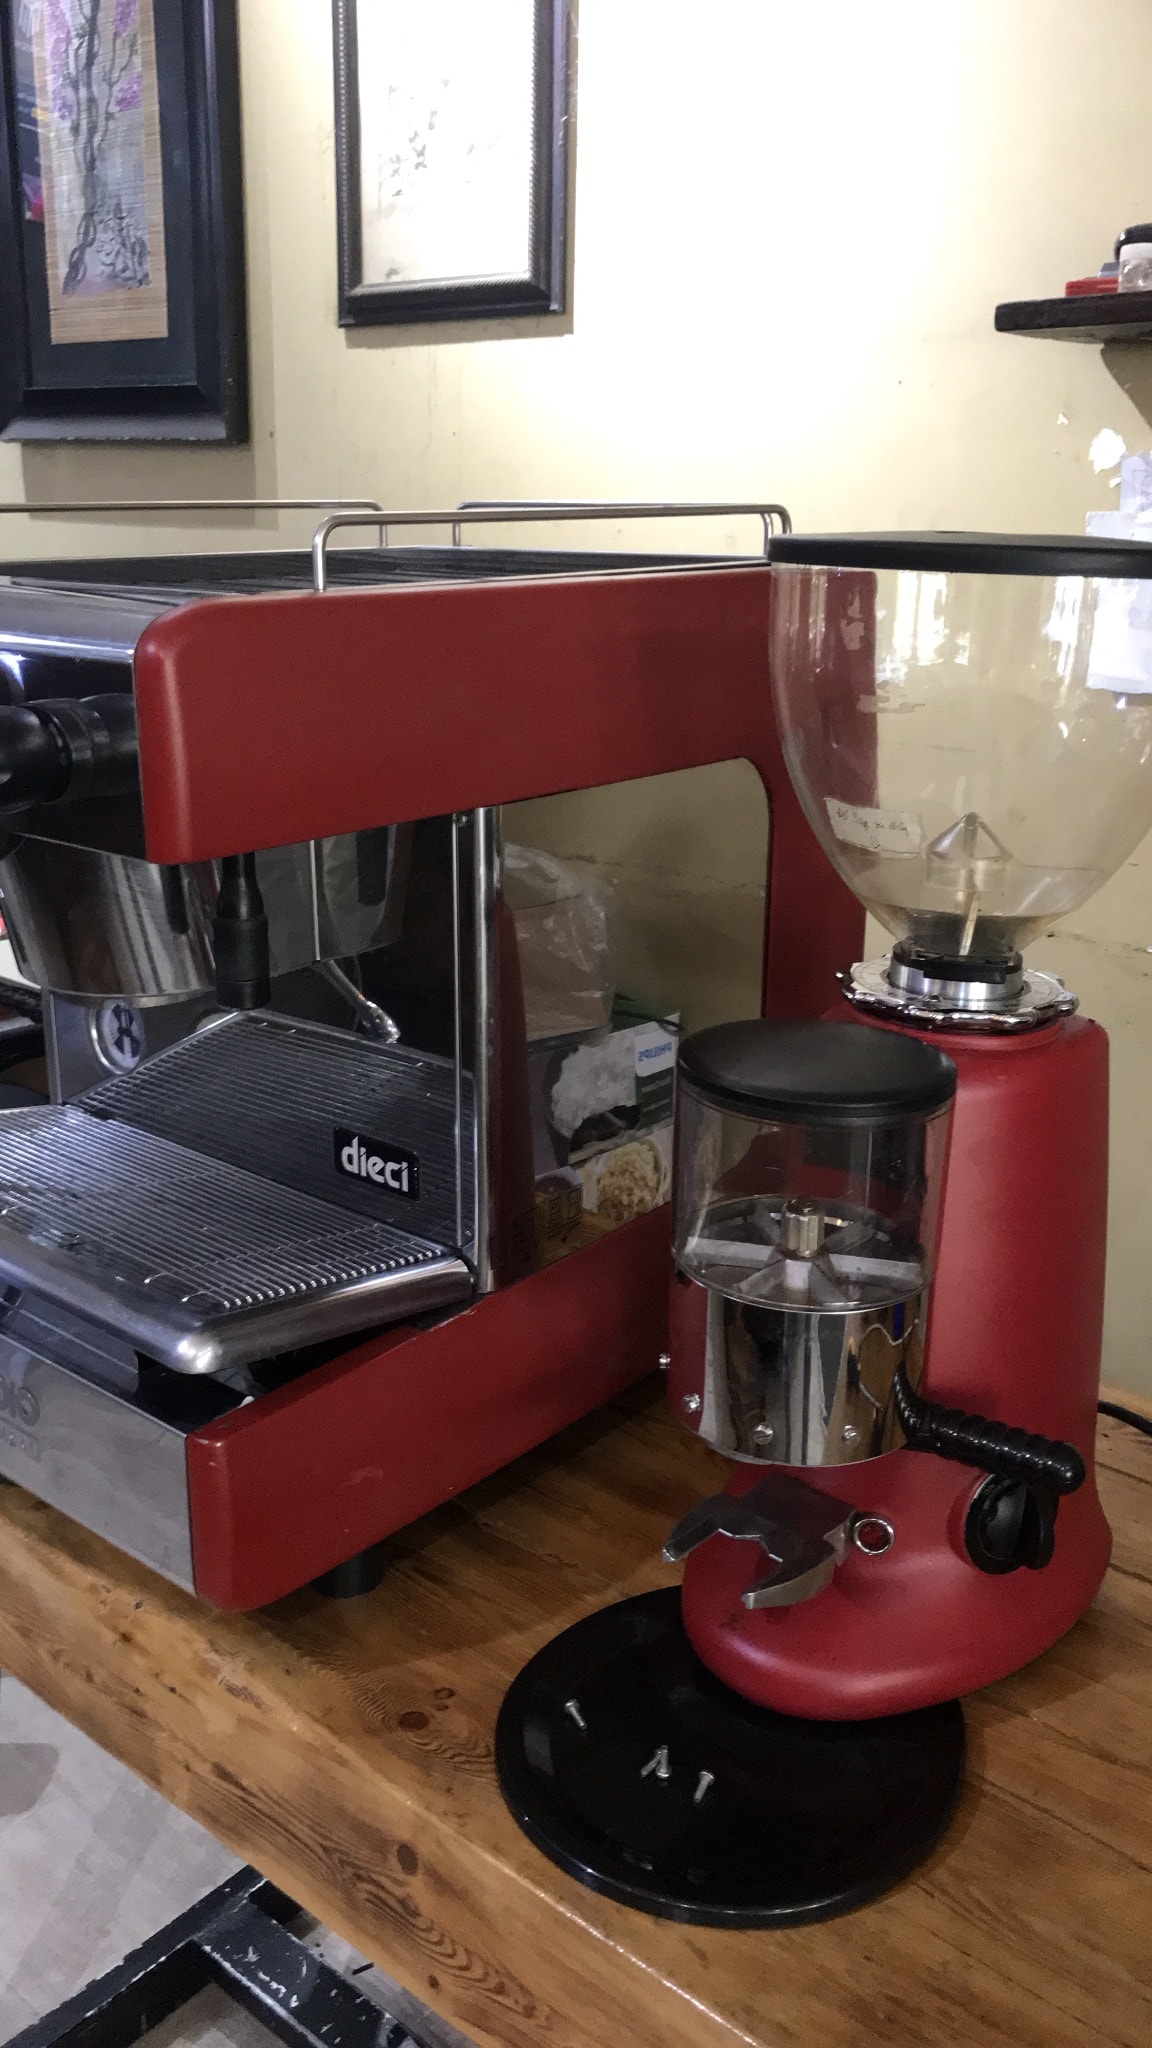 Thanh lý máy pha cafe espresso Casadio nguyên bộ kèm máy xay HC600.